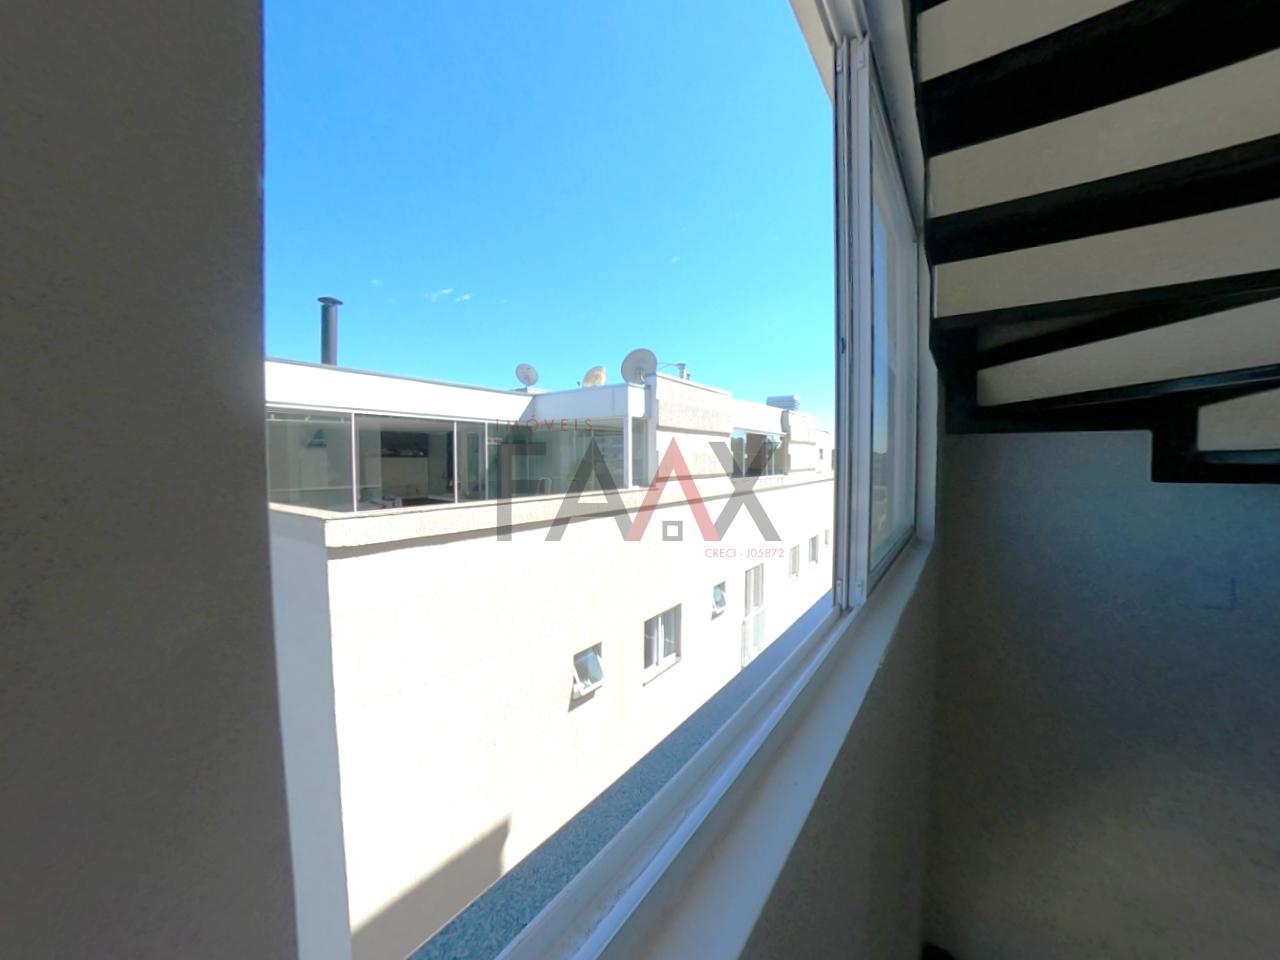 Visão do segundo piso da janela